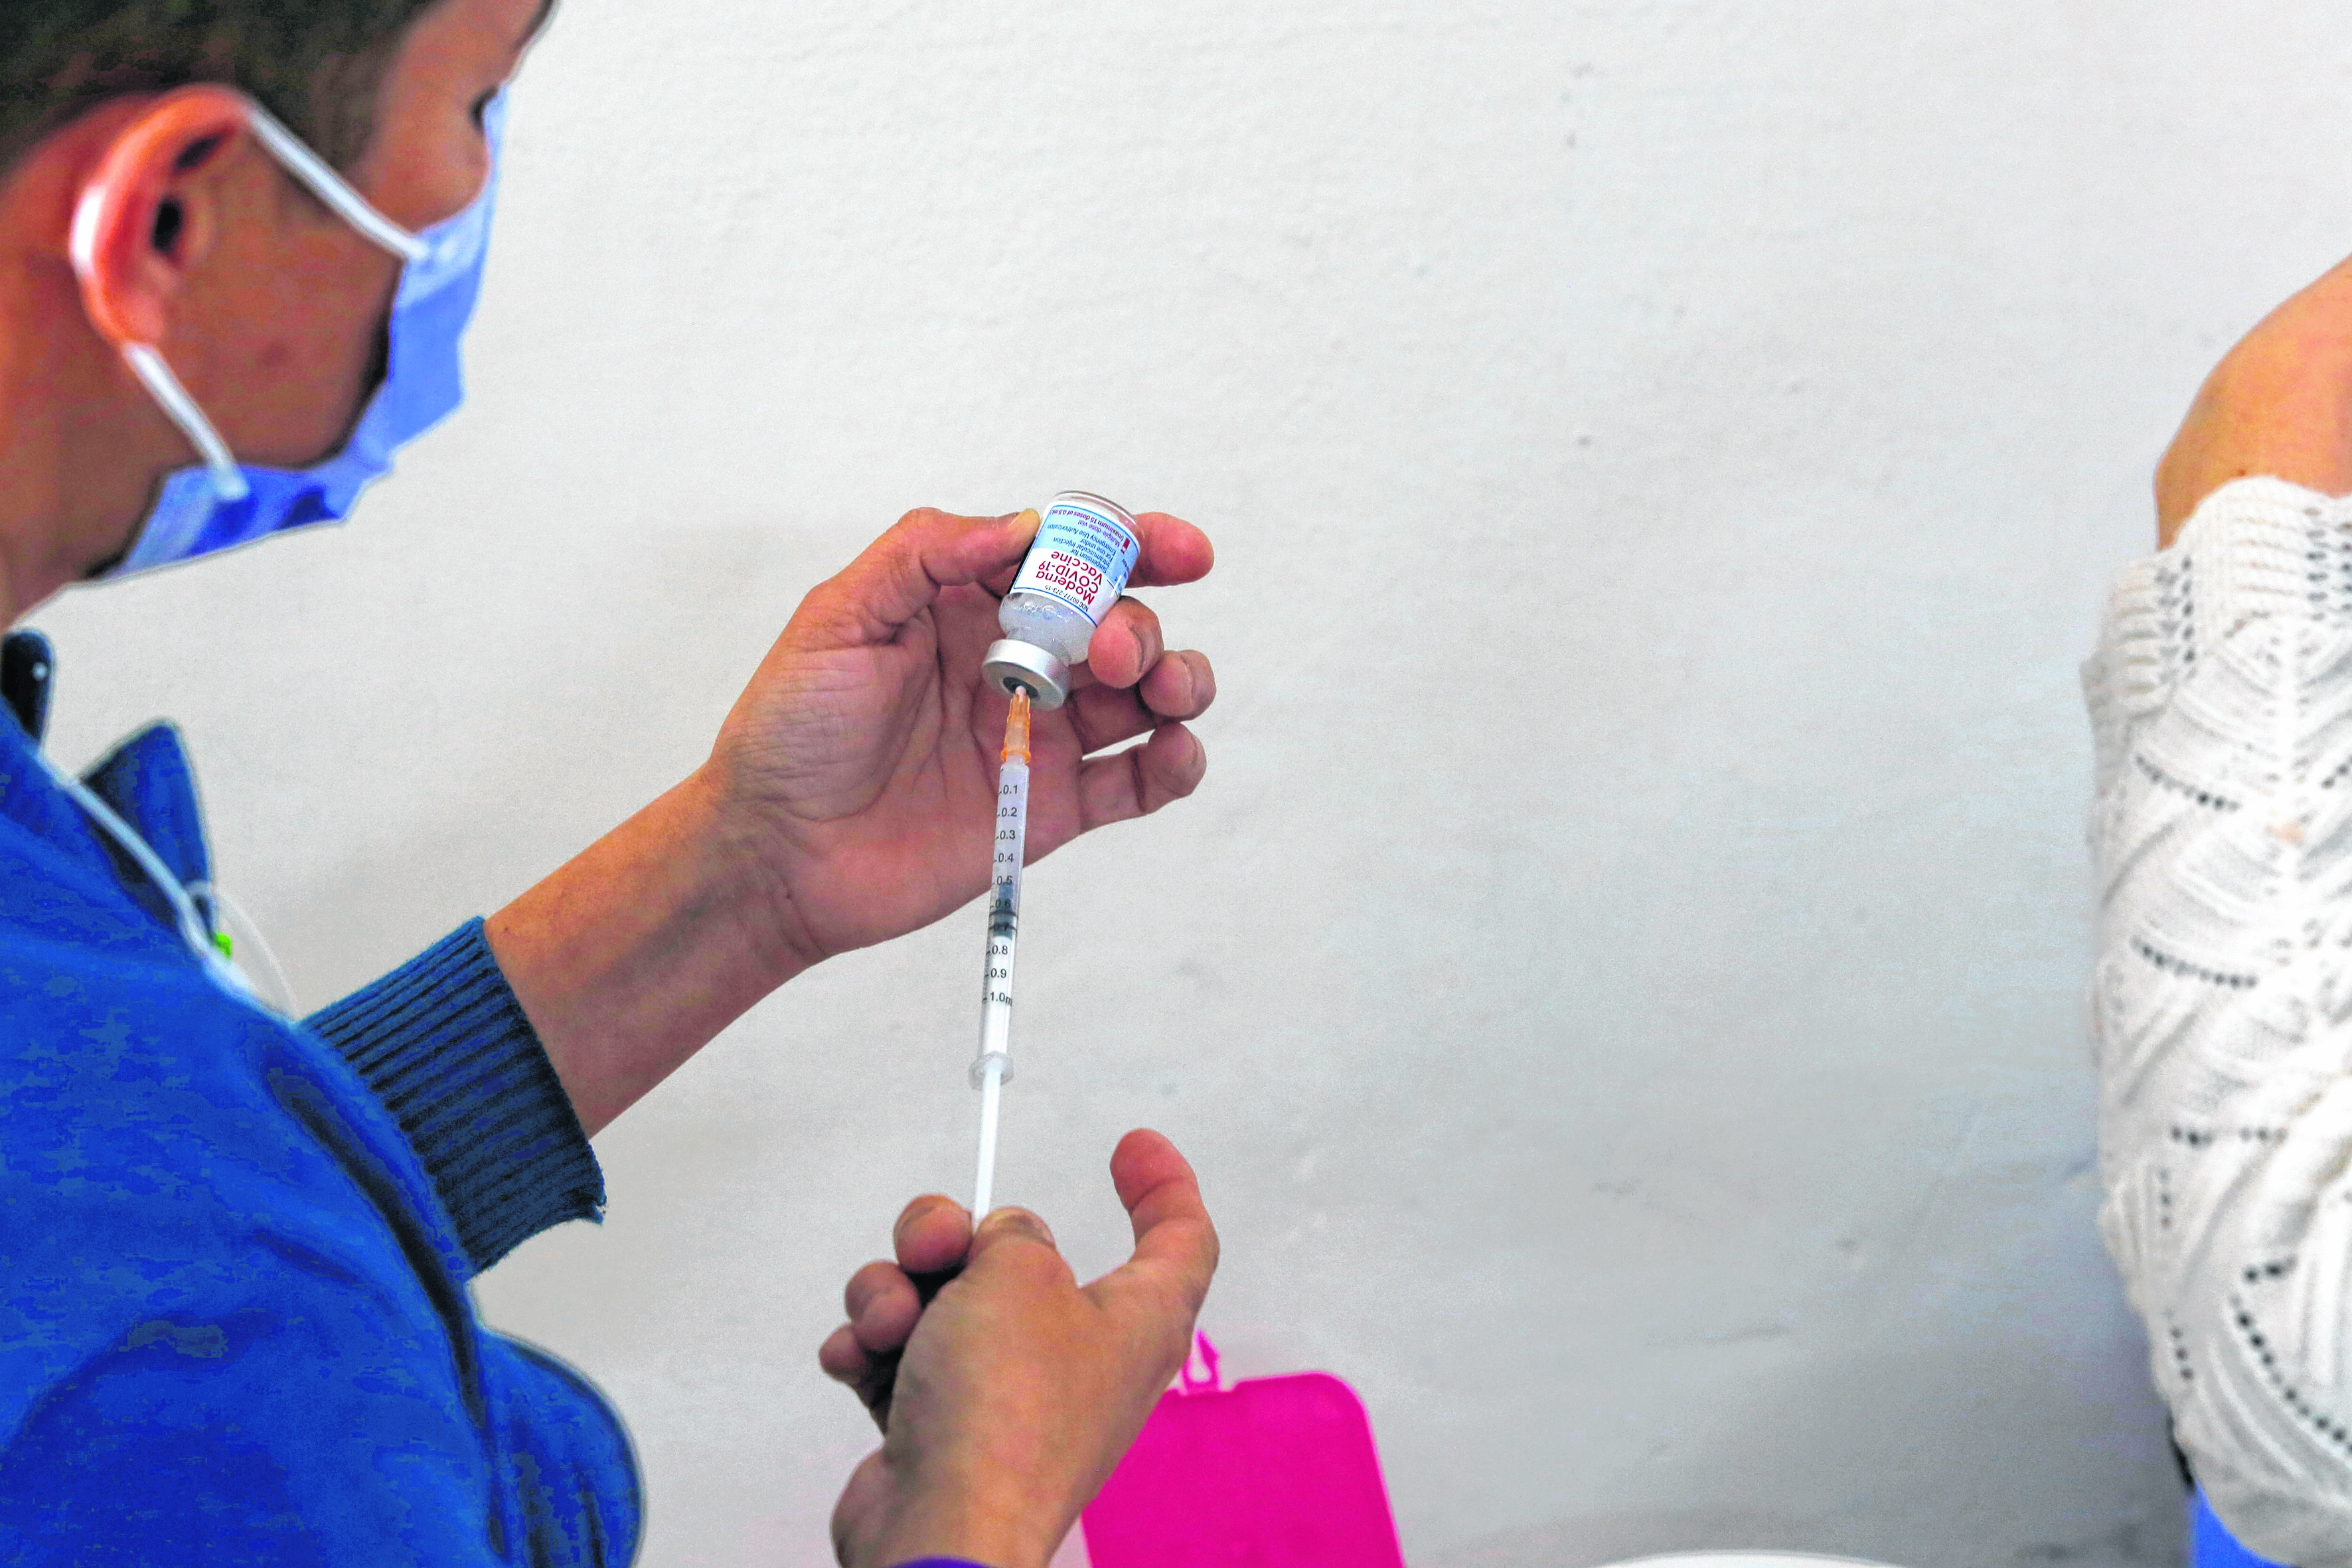 La metodología es similar a la de las vacunas contra la gripe, que habitualmente incluyen distintas cepas año a año.